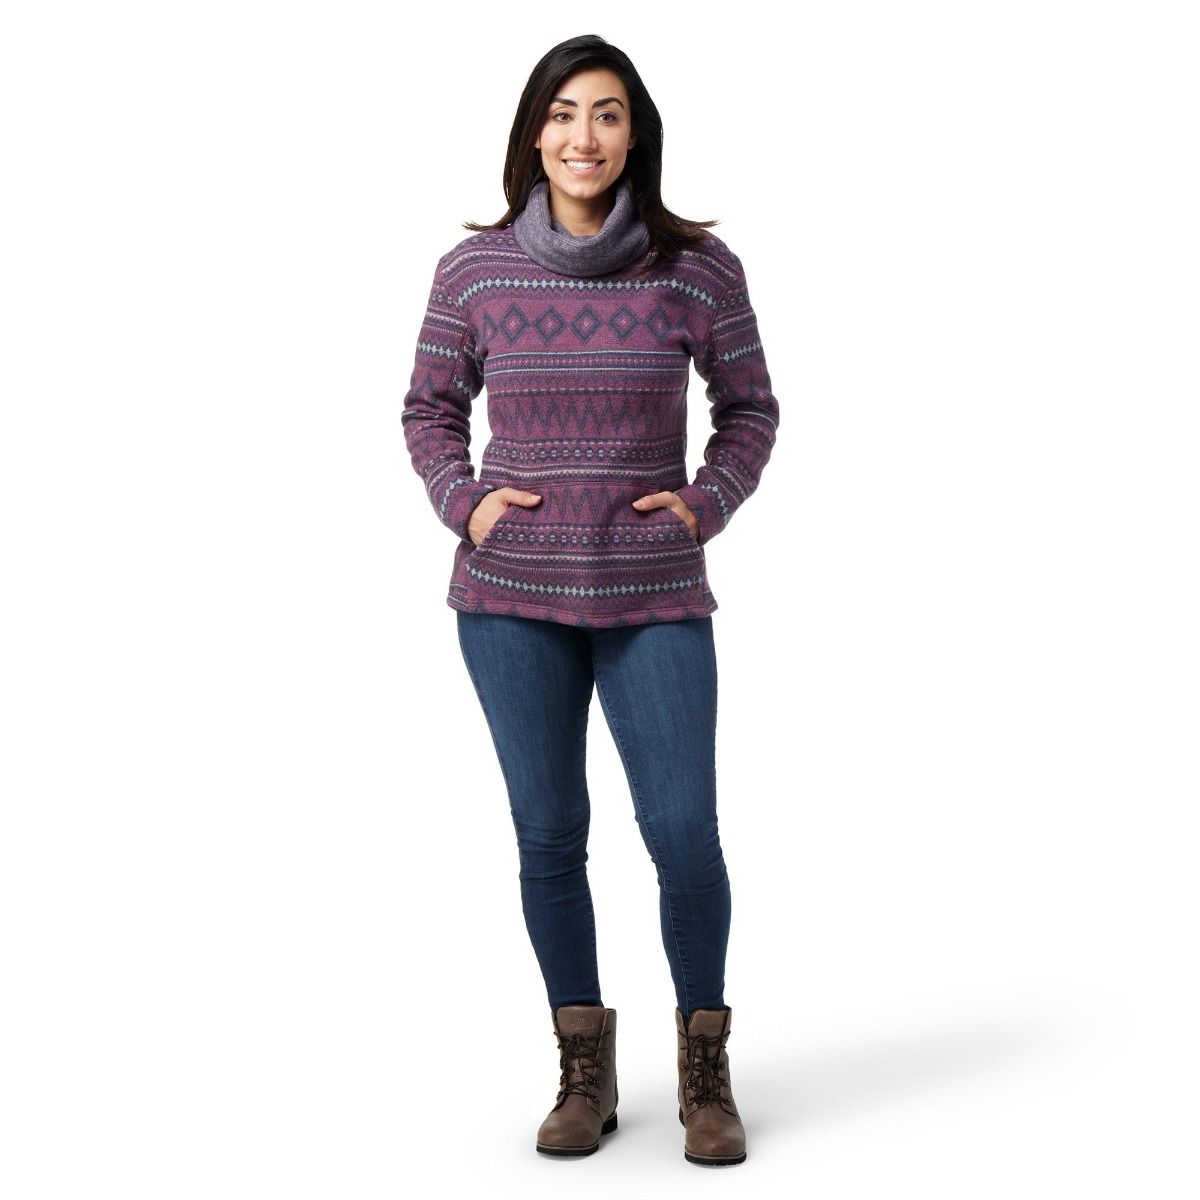 Women's Fleece Pullover Sweaters